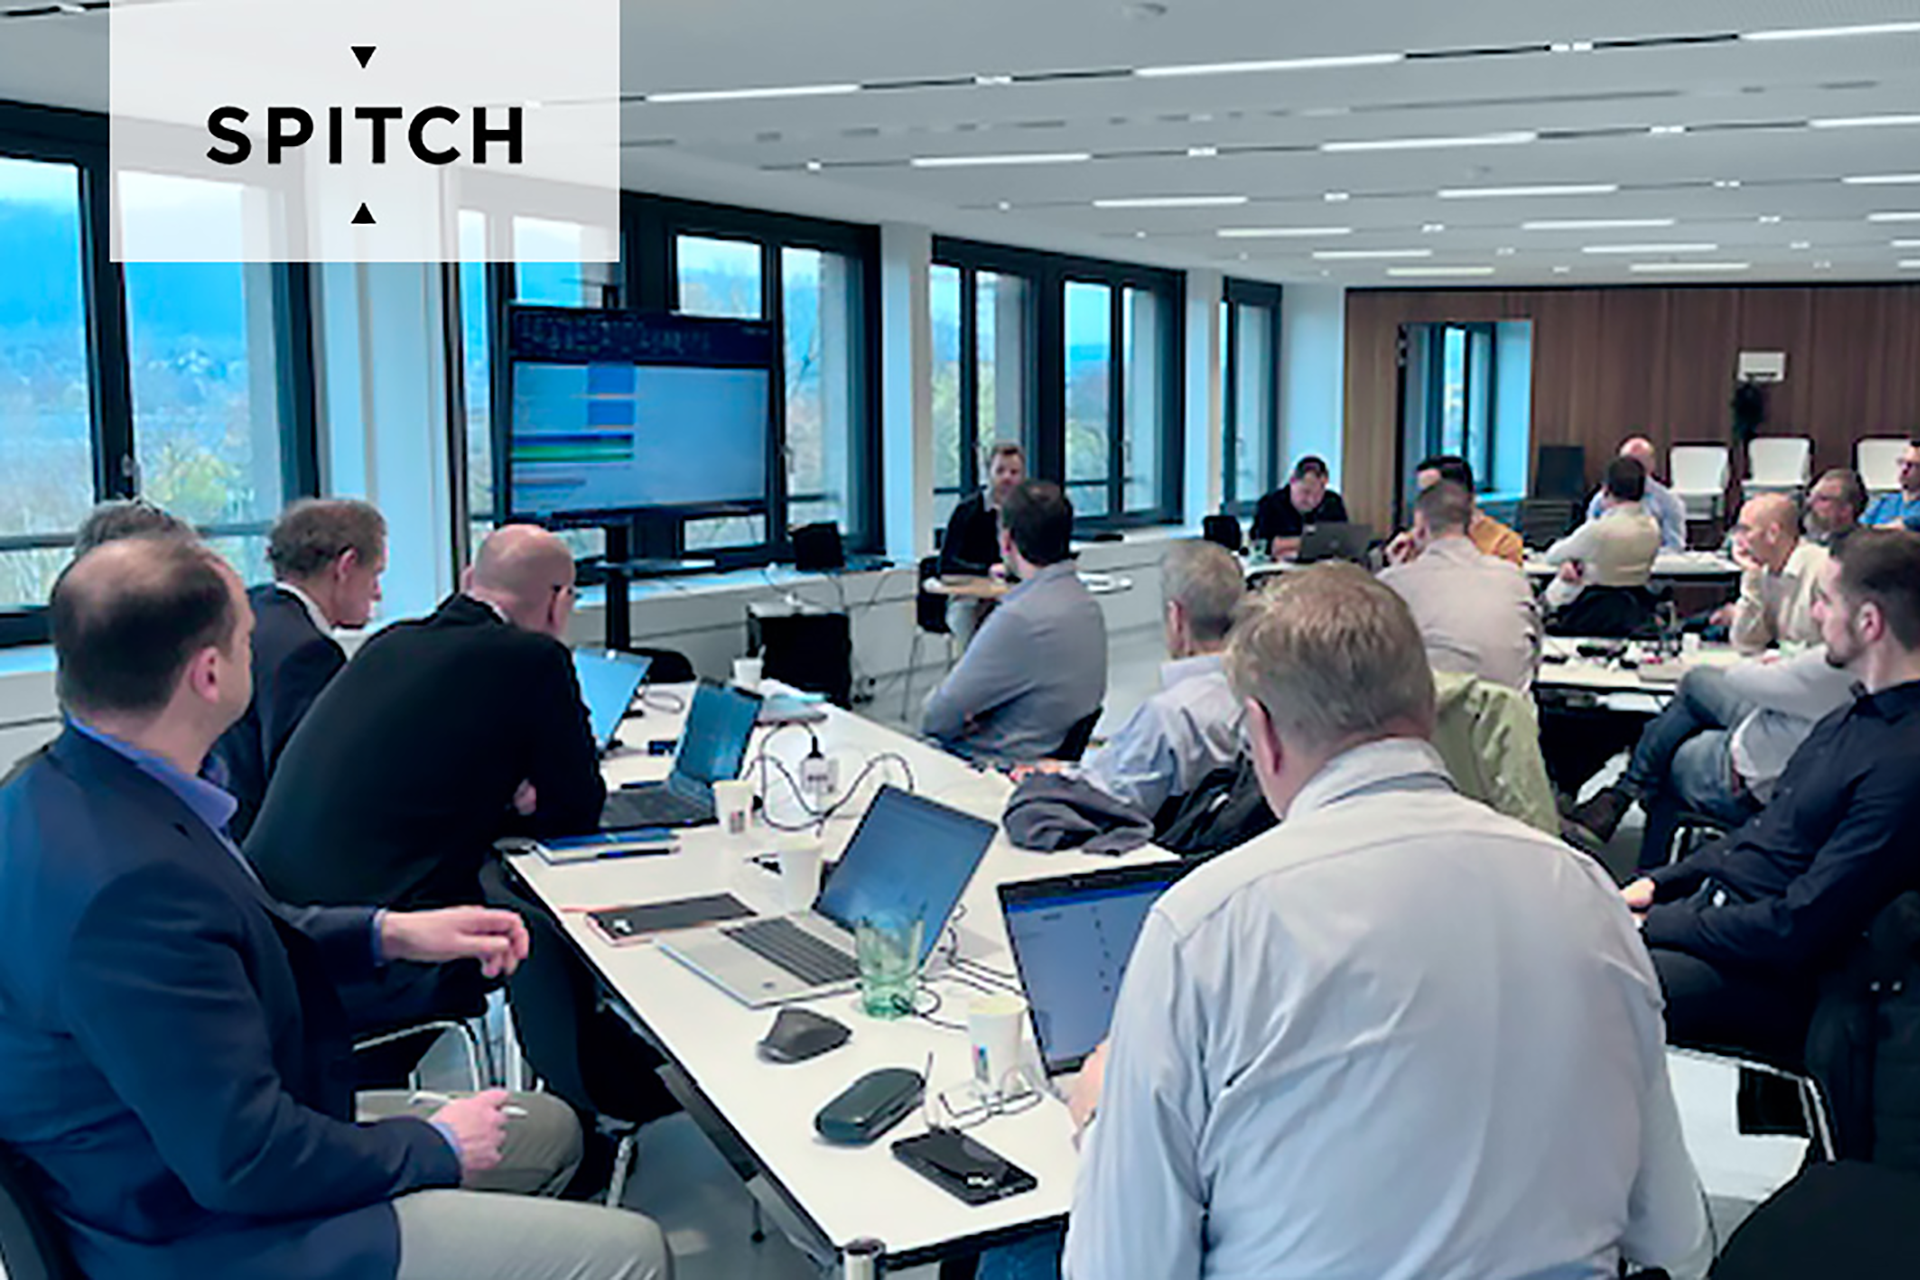  Spitch bietet Partnern weltweit fortschrittliche KI-Schulungen und Technologien, um innovative Lösungen für Kunden effektiv umzusetzen_cmm360.ch_Bild:https://spitch.ai/